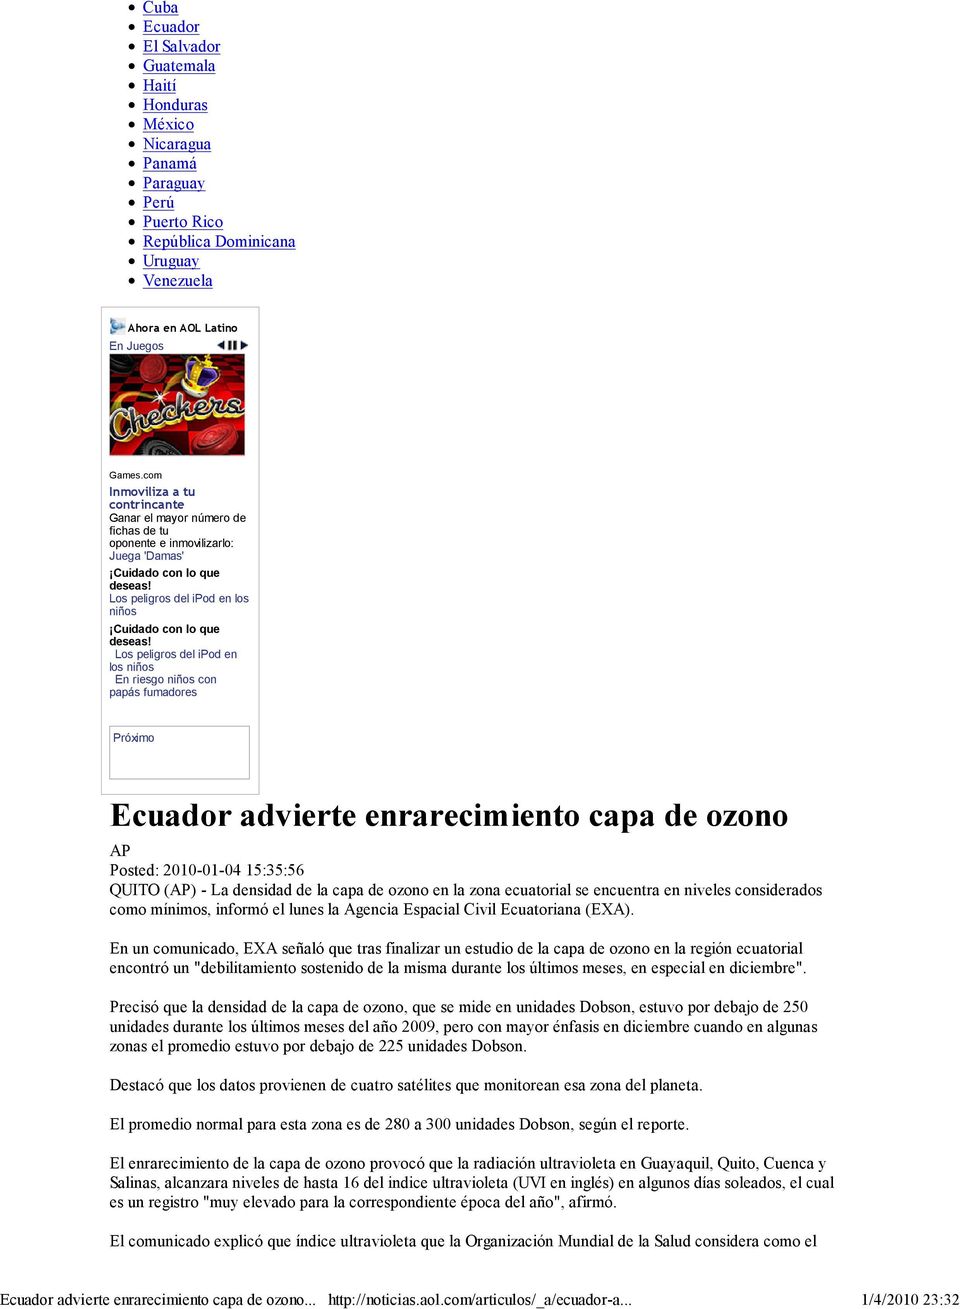 Los peligros del ipod en los niños En riesgo niños con papás fumadores Próximo Ecuador advierte enrarecimiento capa de ozono AP Posted: 2010-01-04 15:35:56 QUITO (AP) - La densidad de la capa de